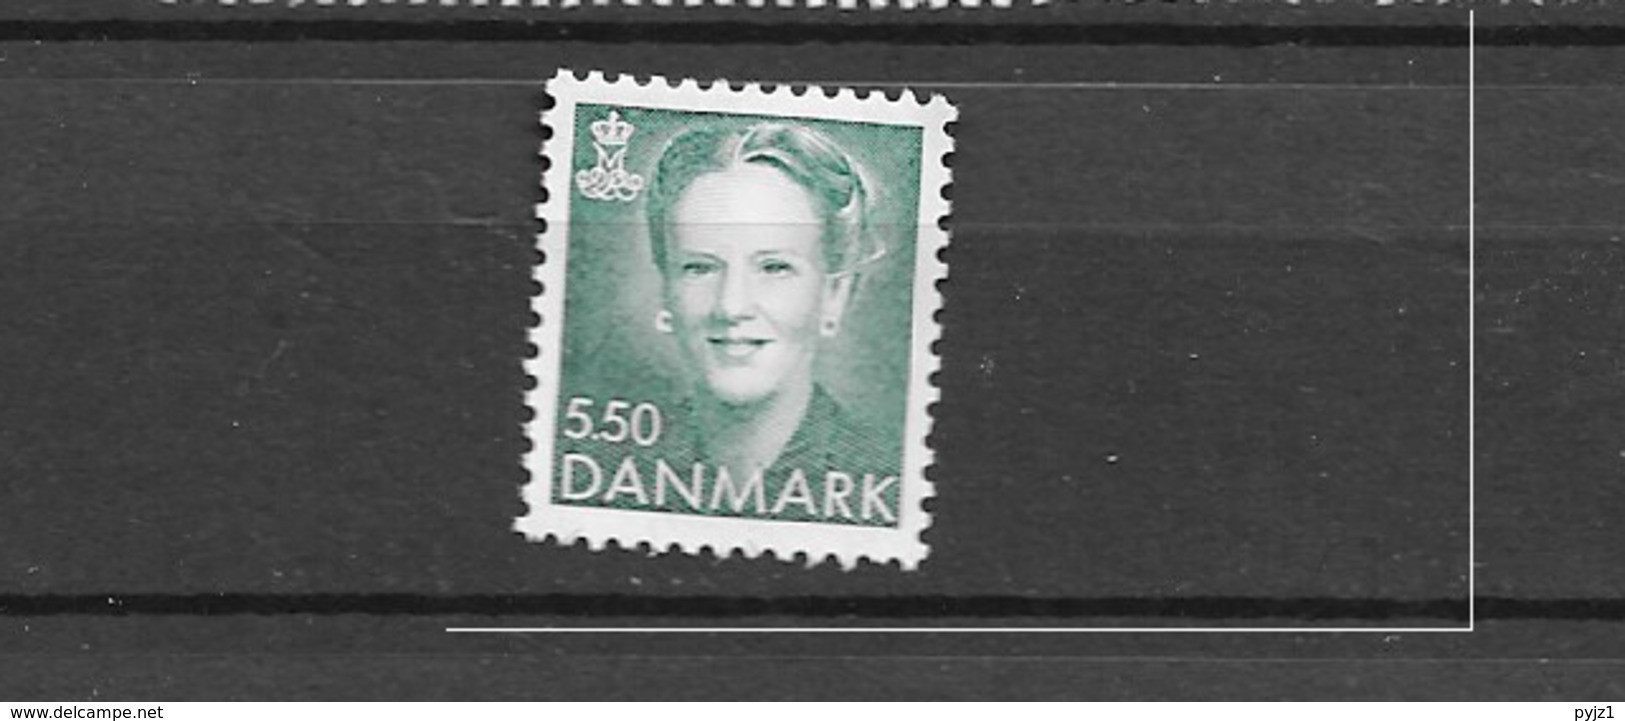 1994 MNH Danmark, Michel 1070 Postfris** - Ungebraucht